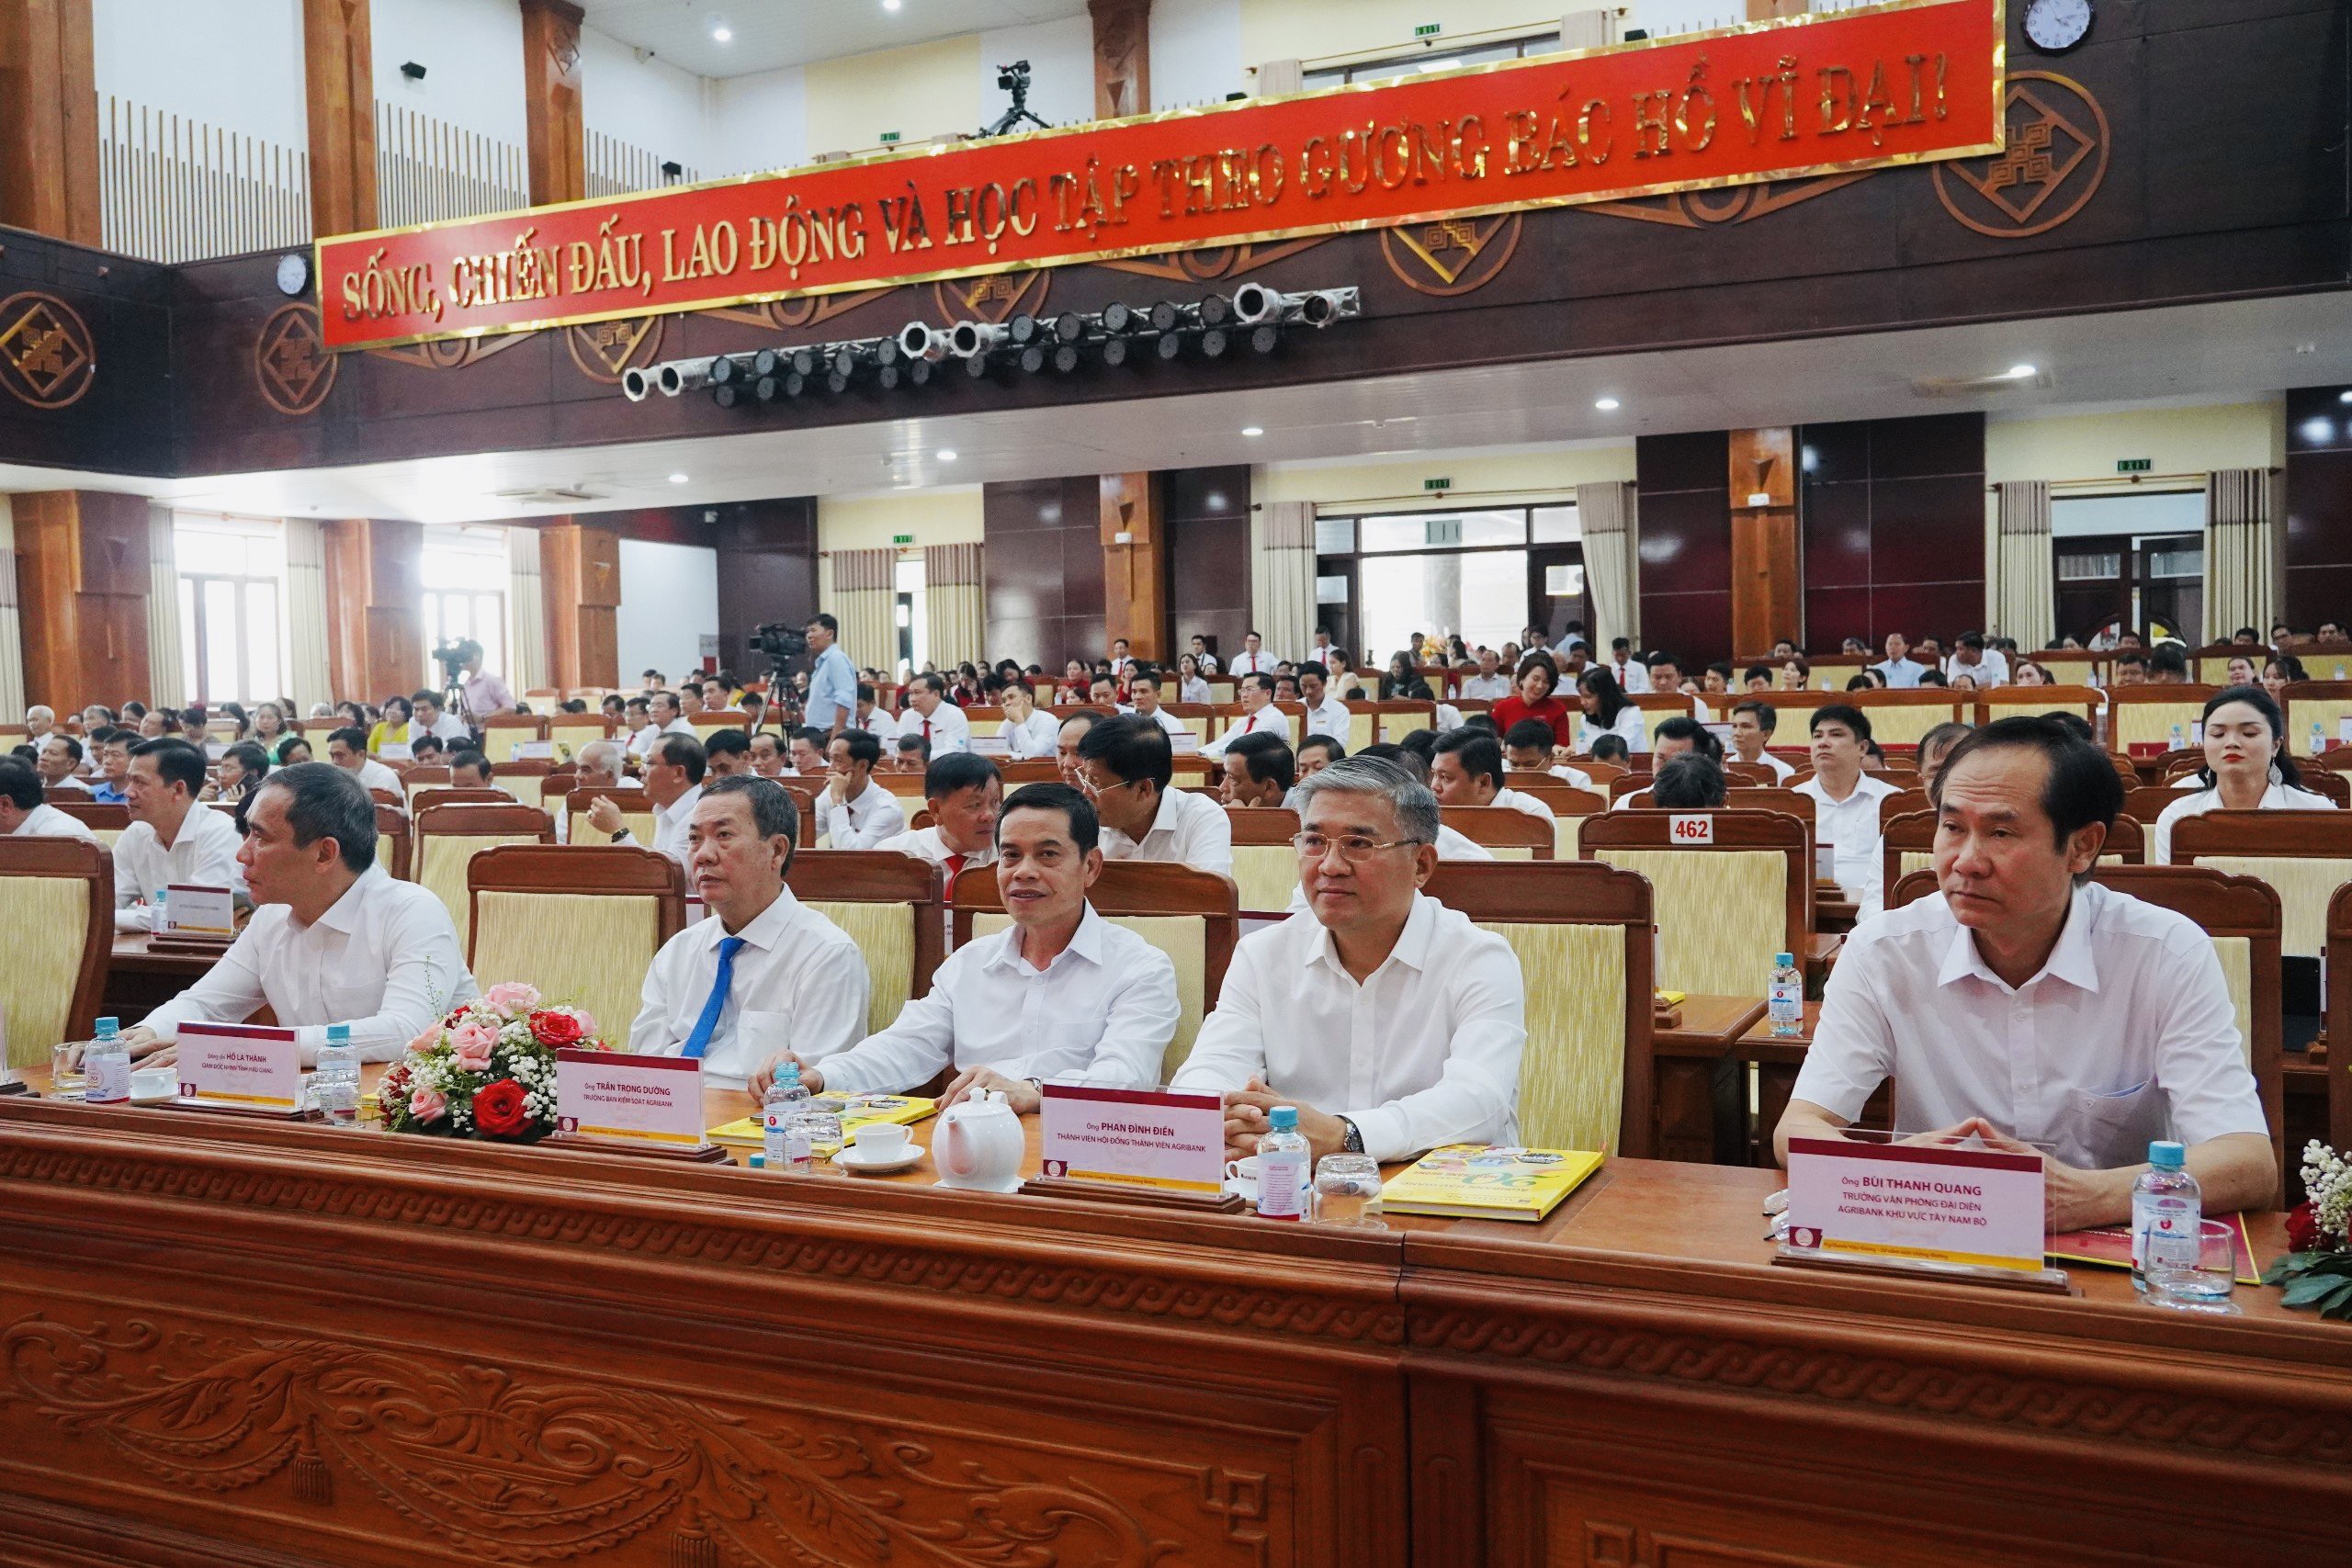 Agribank Chi nhánh tỉnh Hậu Giang vinh dự nhận bằng khen của Thủ tướng Chính phủ- Ảnh 1.